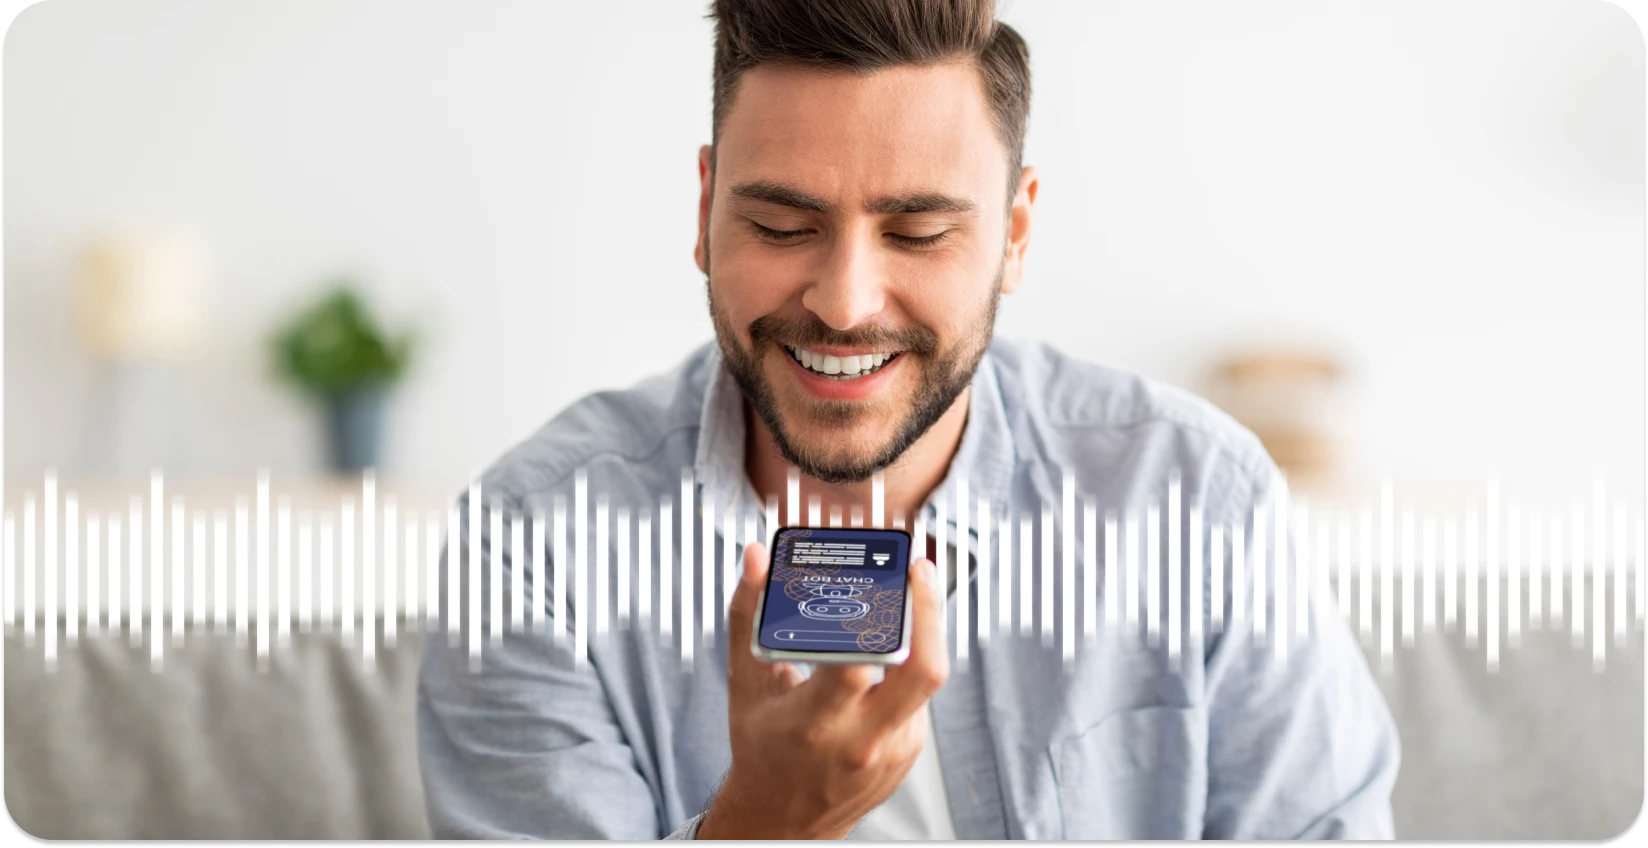 Homem sorrindo enquanto usa um aplicativo de smartphone para cortar ondas de áudio, melhorando a experiência de edição online.